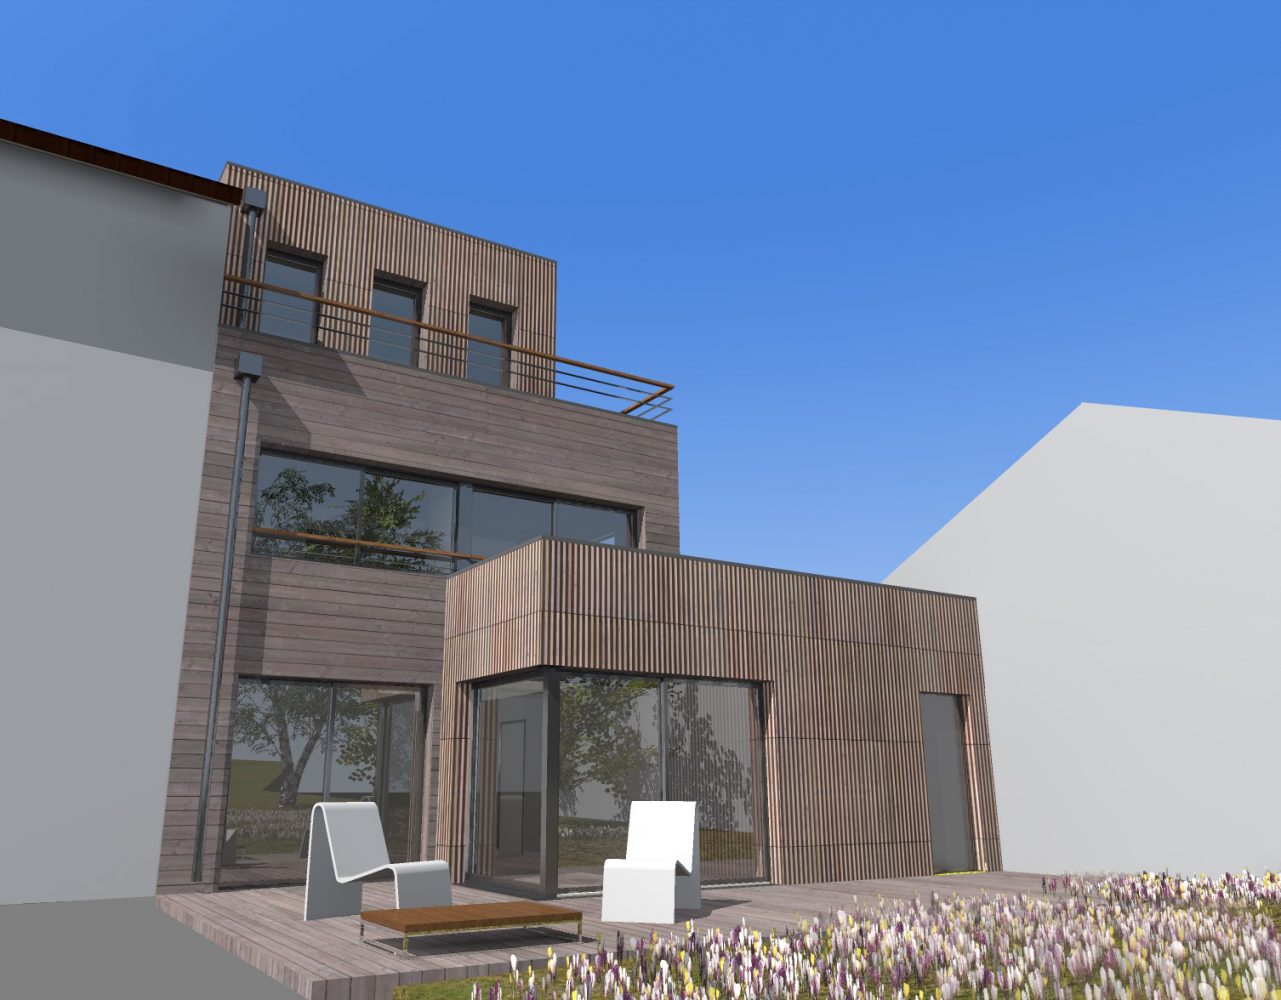 Philippe_Zerbib_Architecte_construction_maisons_ossature_bois_projet_maison-Vollaire-View 0_3#1